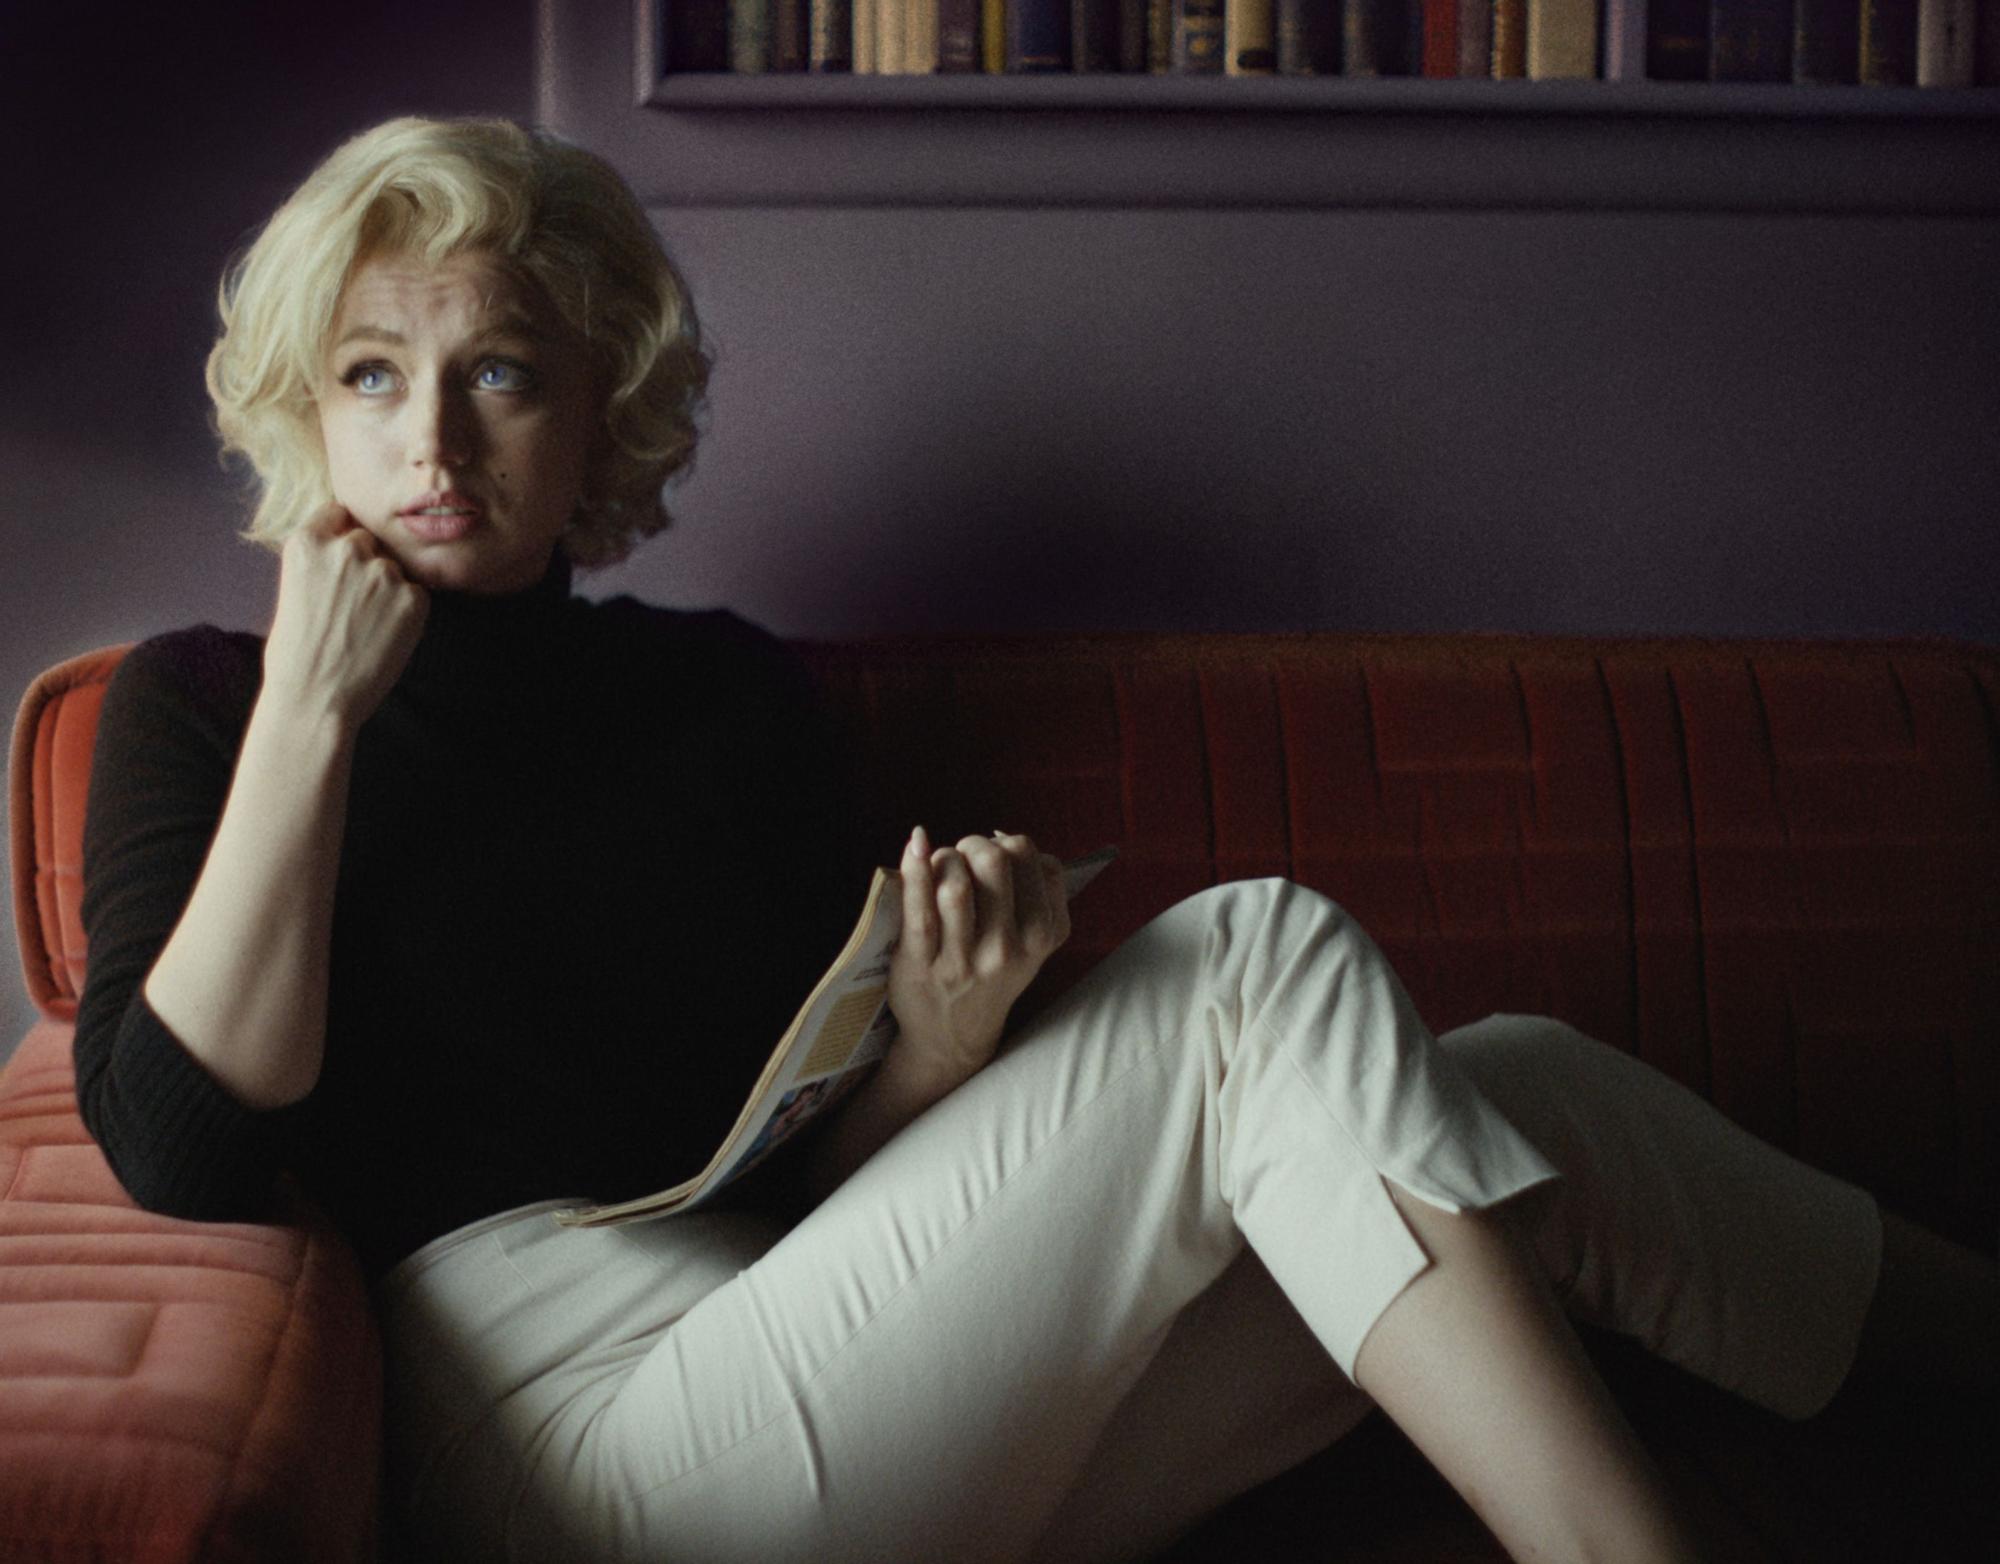 Escena de la serie 'Blonde' protagonizada por la actriz Ana de Armas que encarna el papel de Marilyn Monroe.